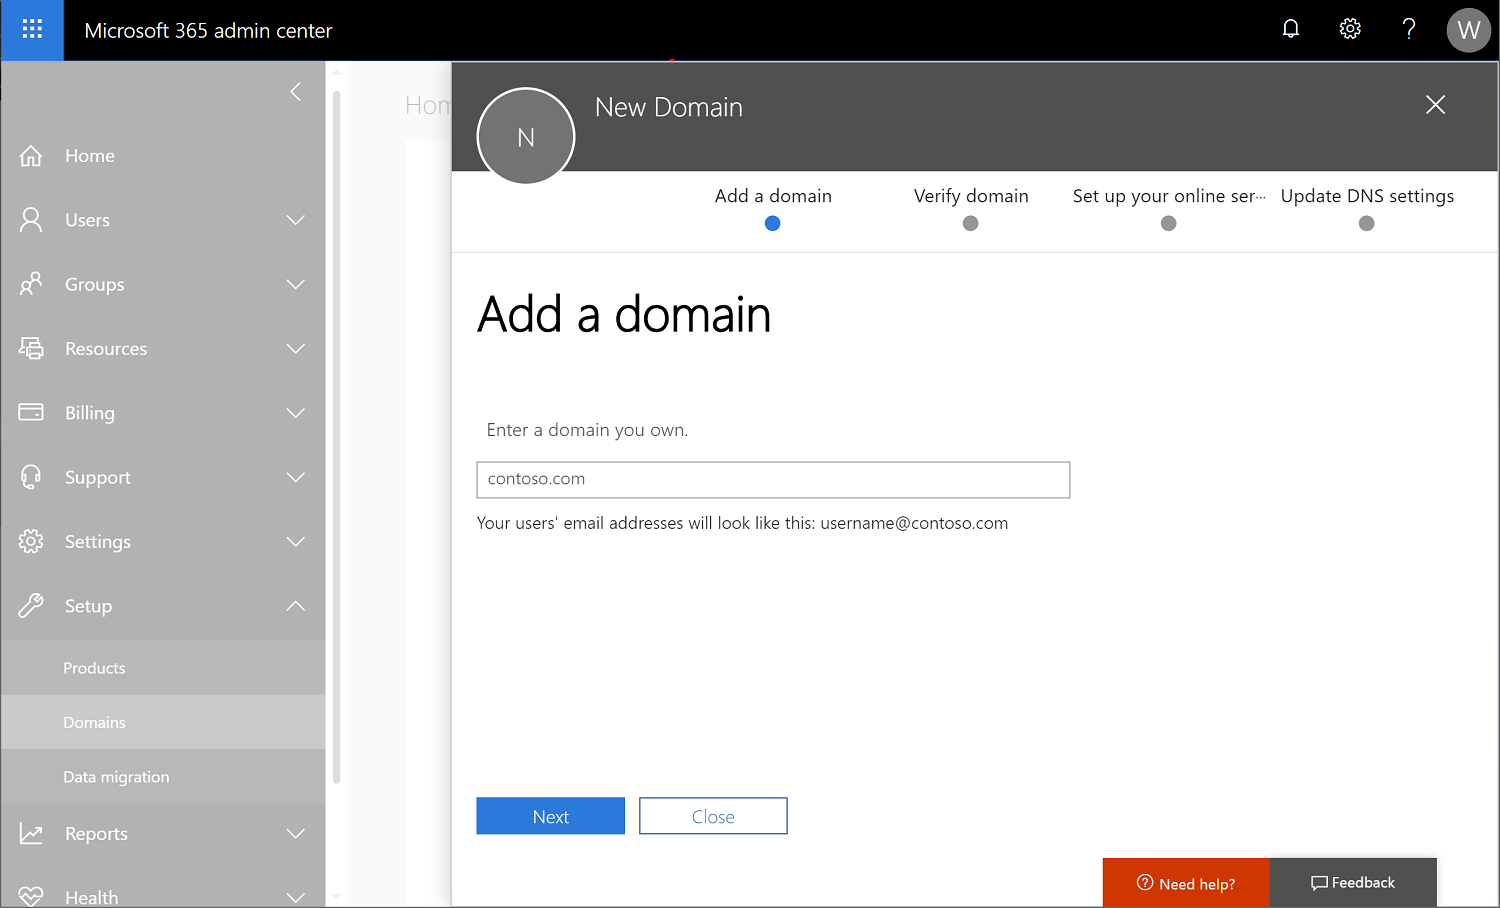 Screenshot di interfaccia di amministrazione di Microsoft 365 con l'opzione Impostazioni > domini selezionata e l'aggiunta di un nuovo nome di dominio